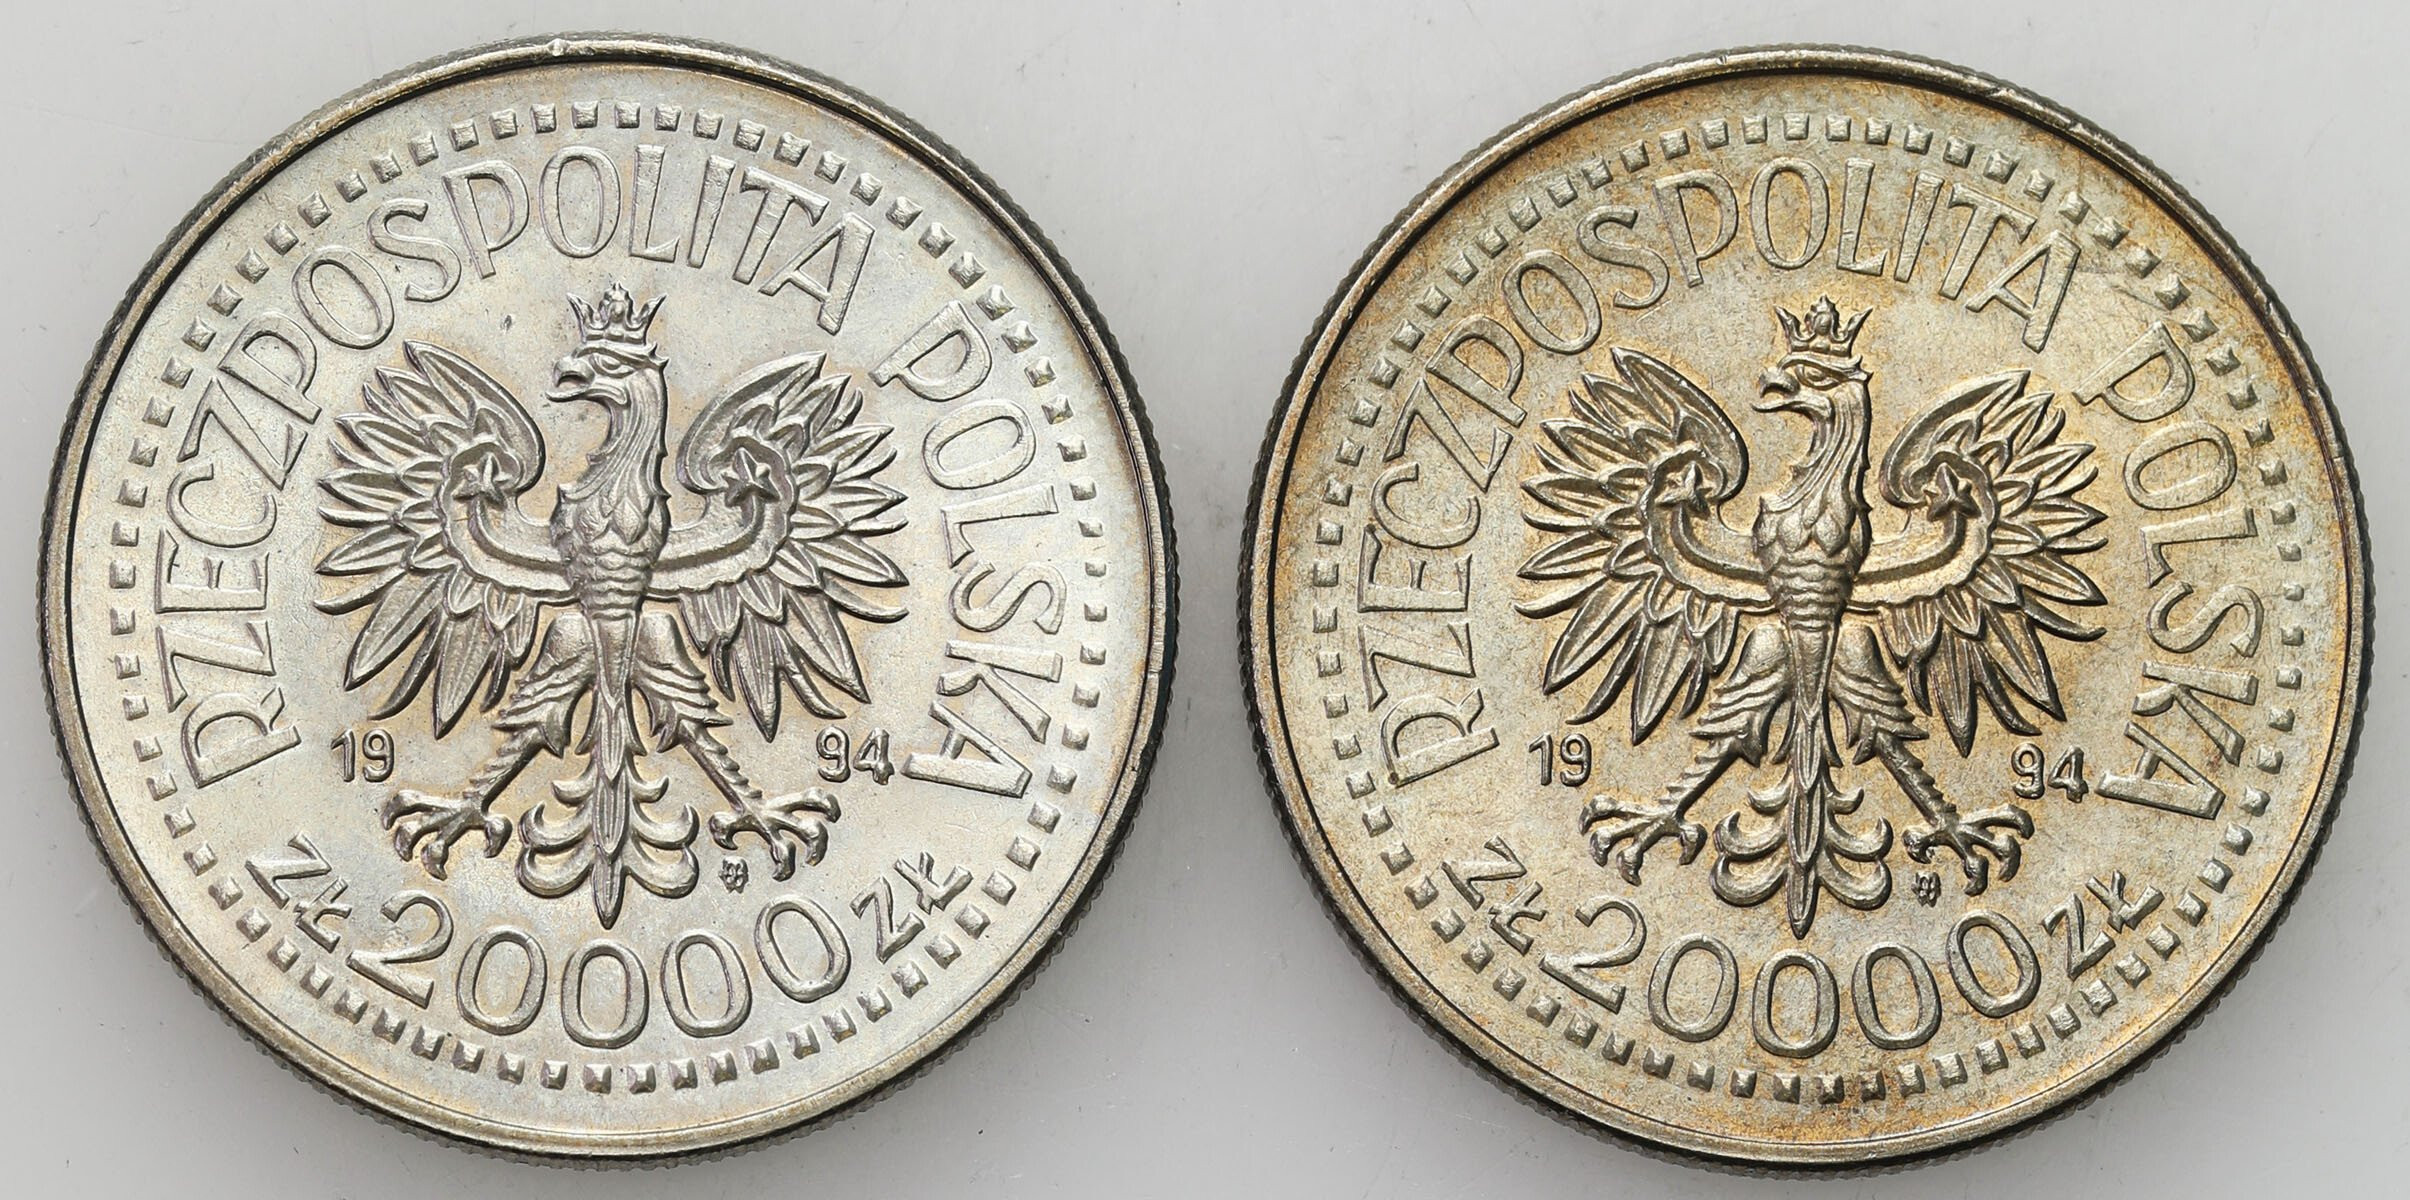 III RP. 20.000 złotych 1994 75 lat Związku Inwalidów Wojennych RP, zestaw 2 sztuk 